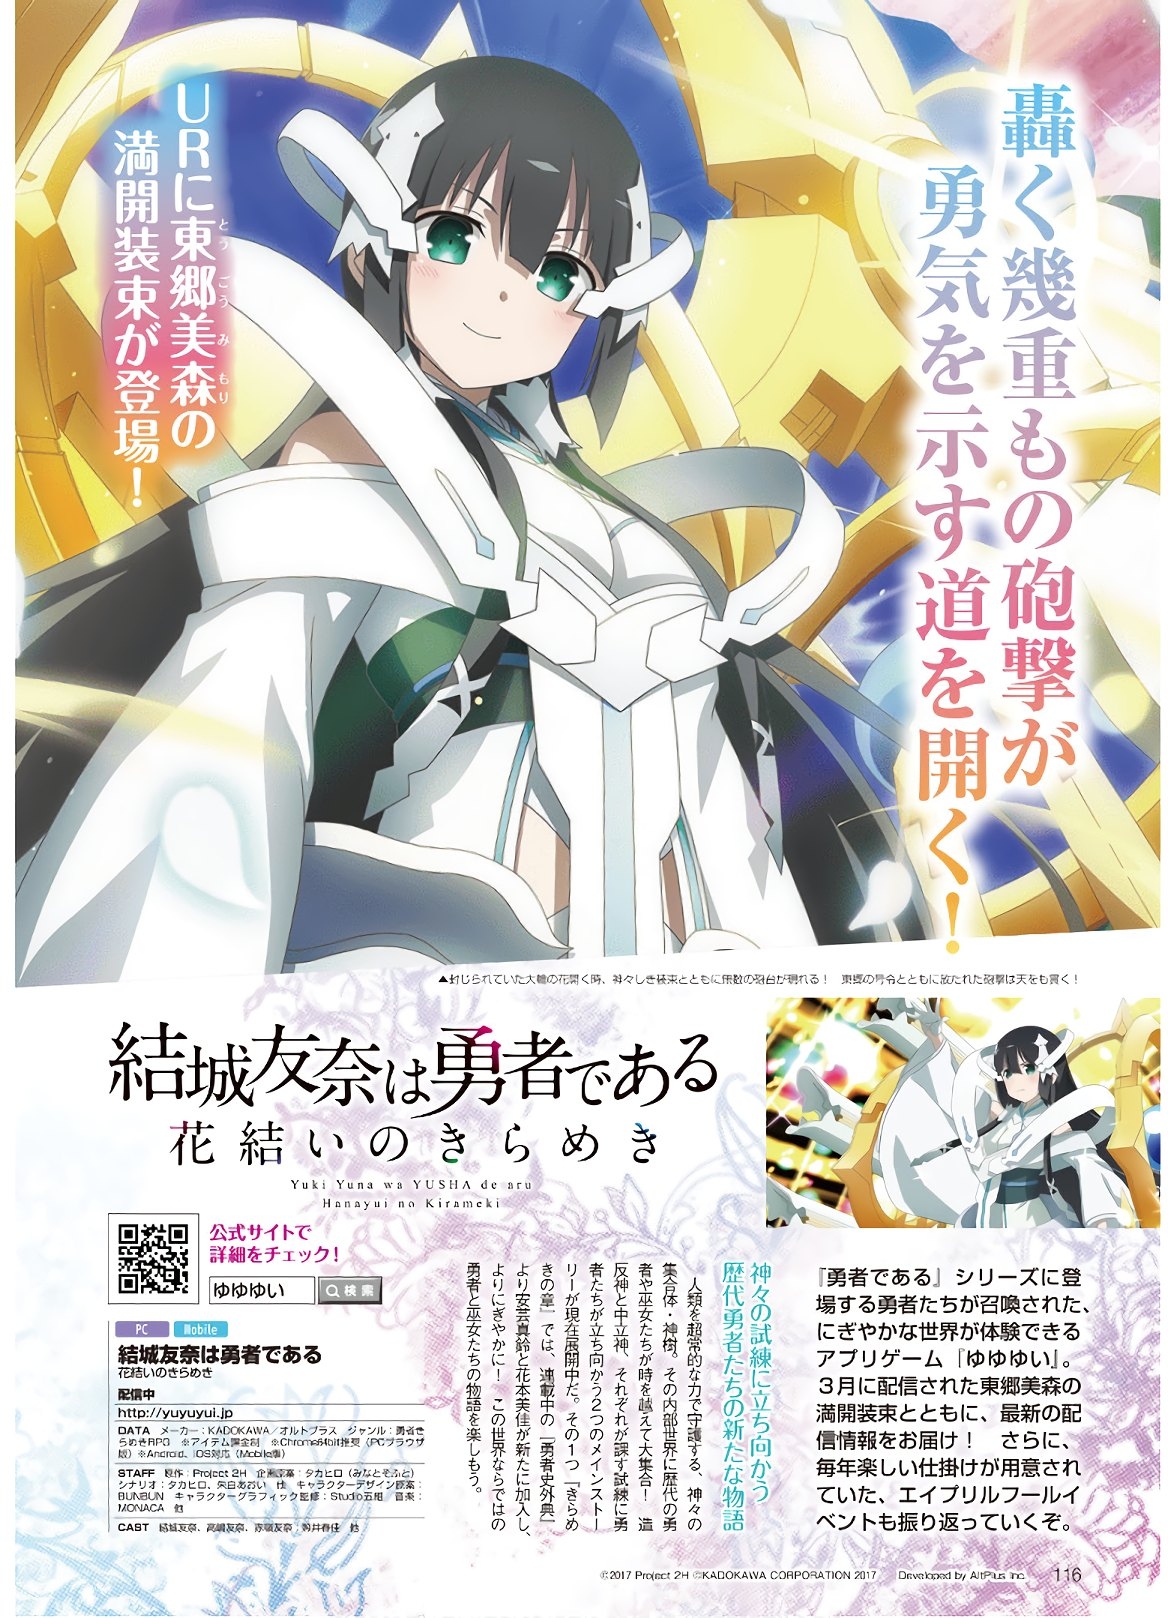 Dengeki G's Magazine #286 - May 2021 113